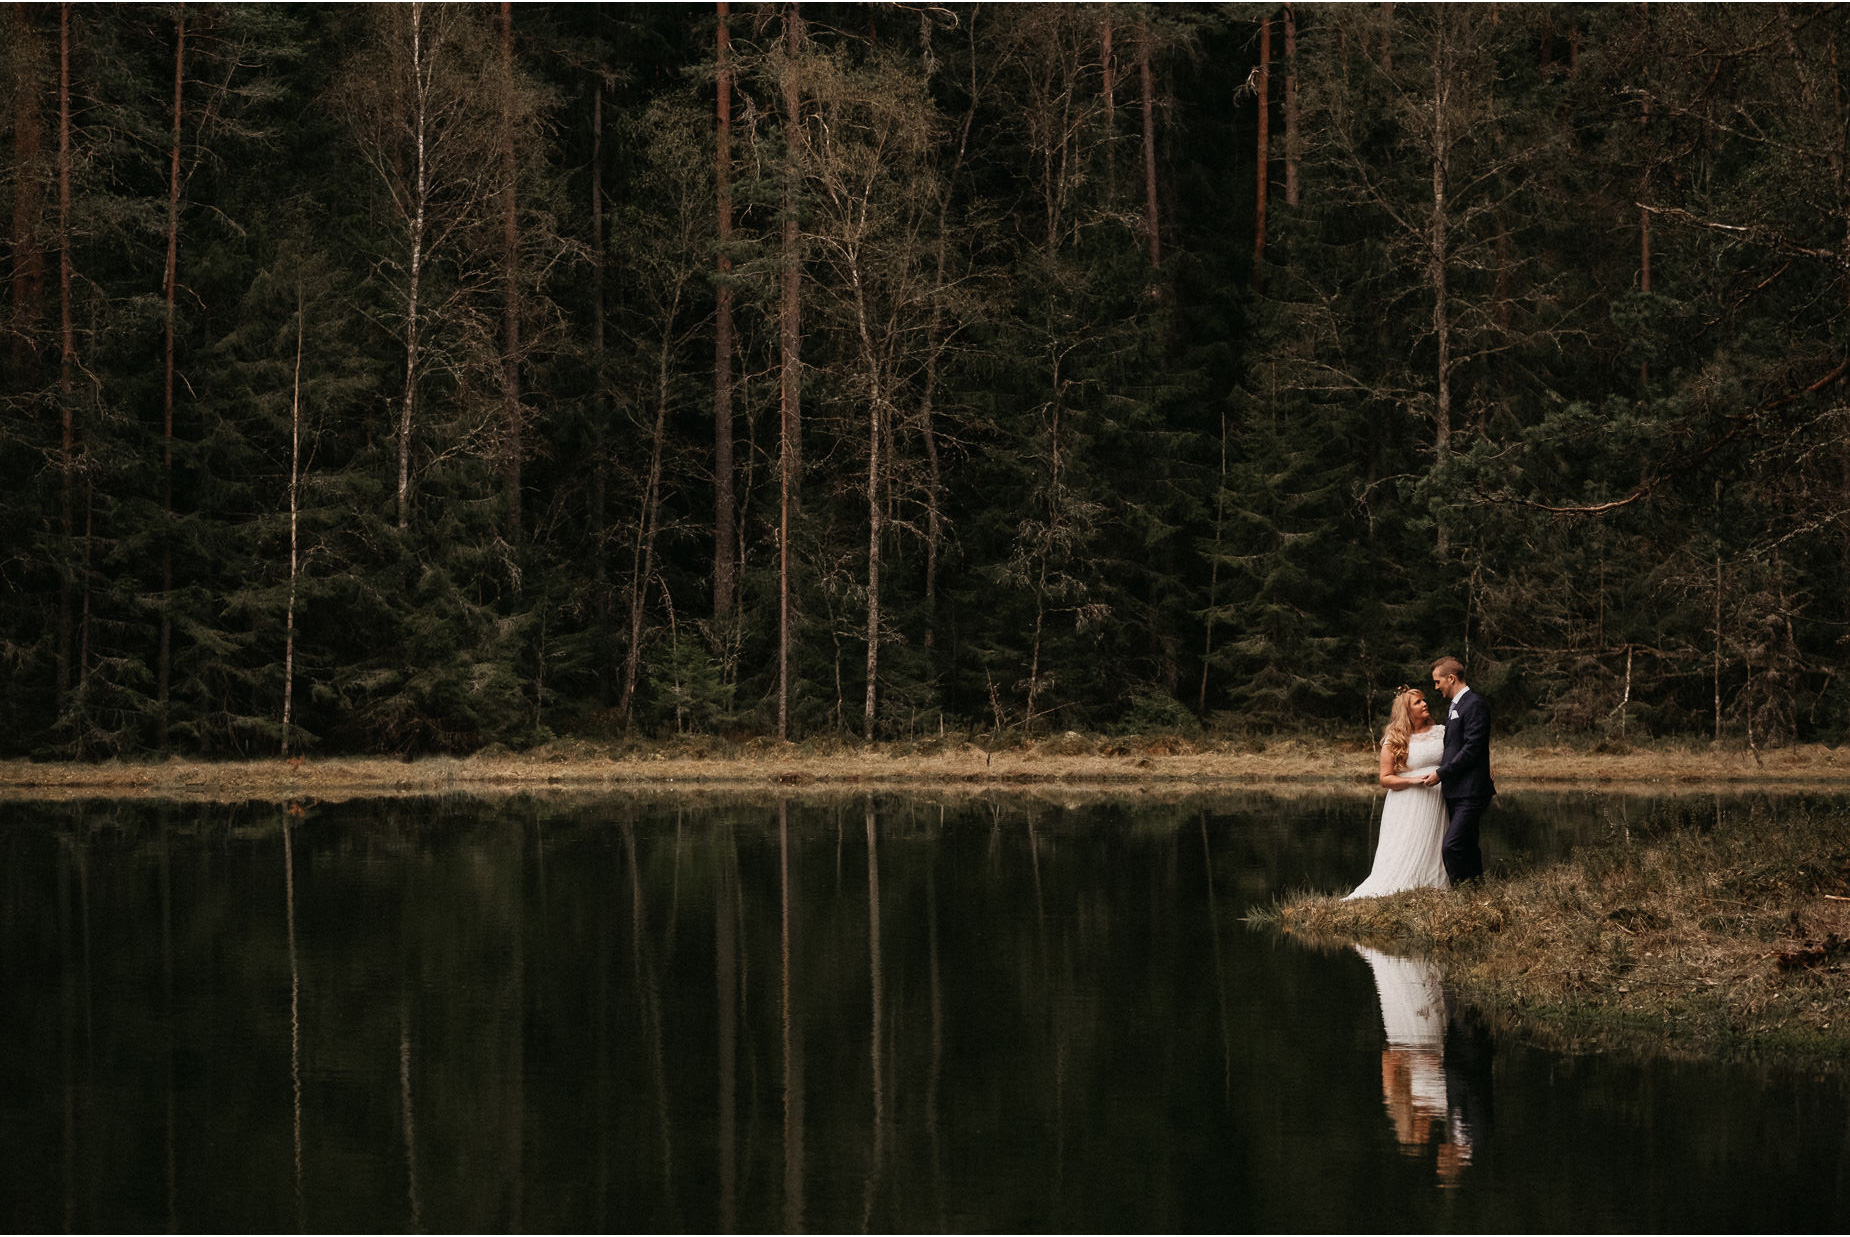 Bröllopsfotografering med inspiration av John Bauers saga om prinsessan Tuvstarr